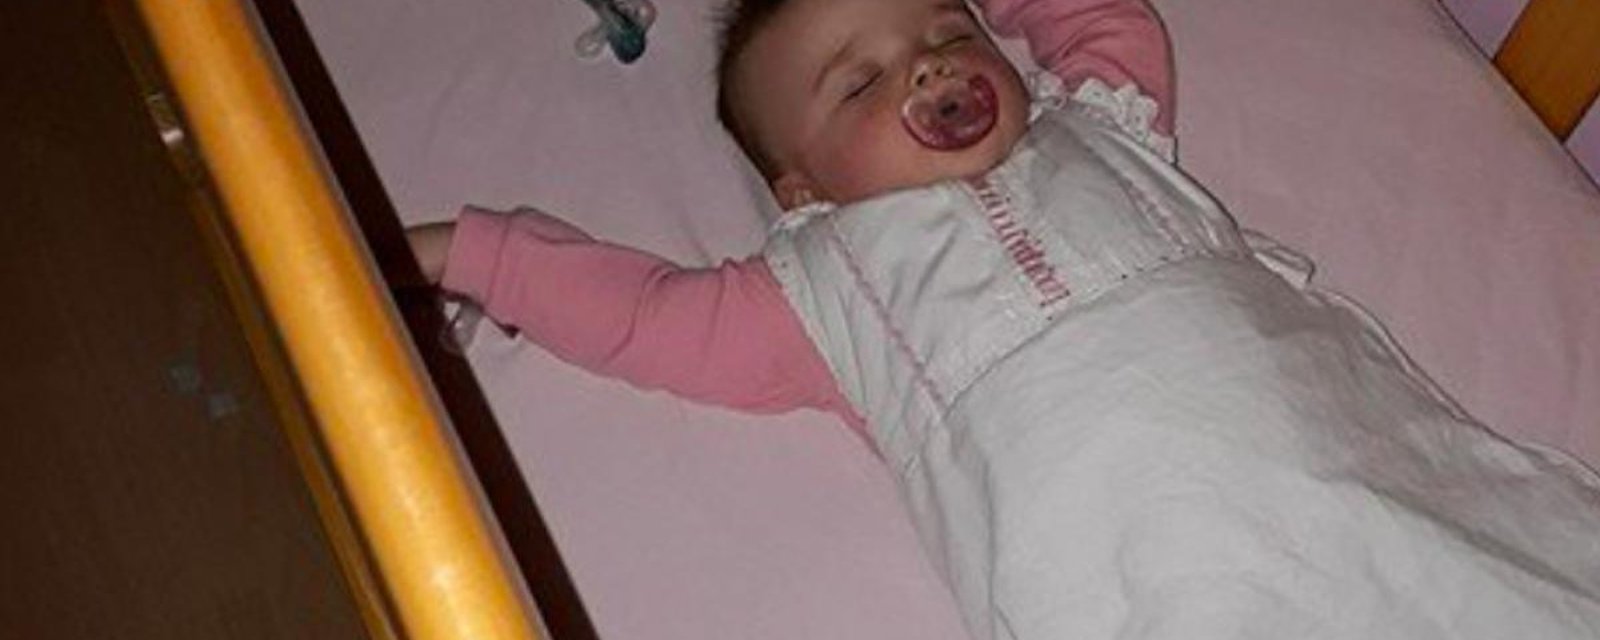 Une mère trouve une astuce simple pour rassurer son bébé la nuit 